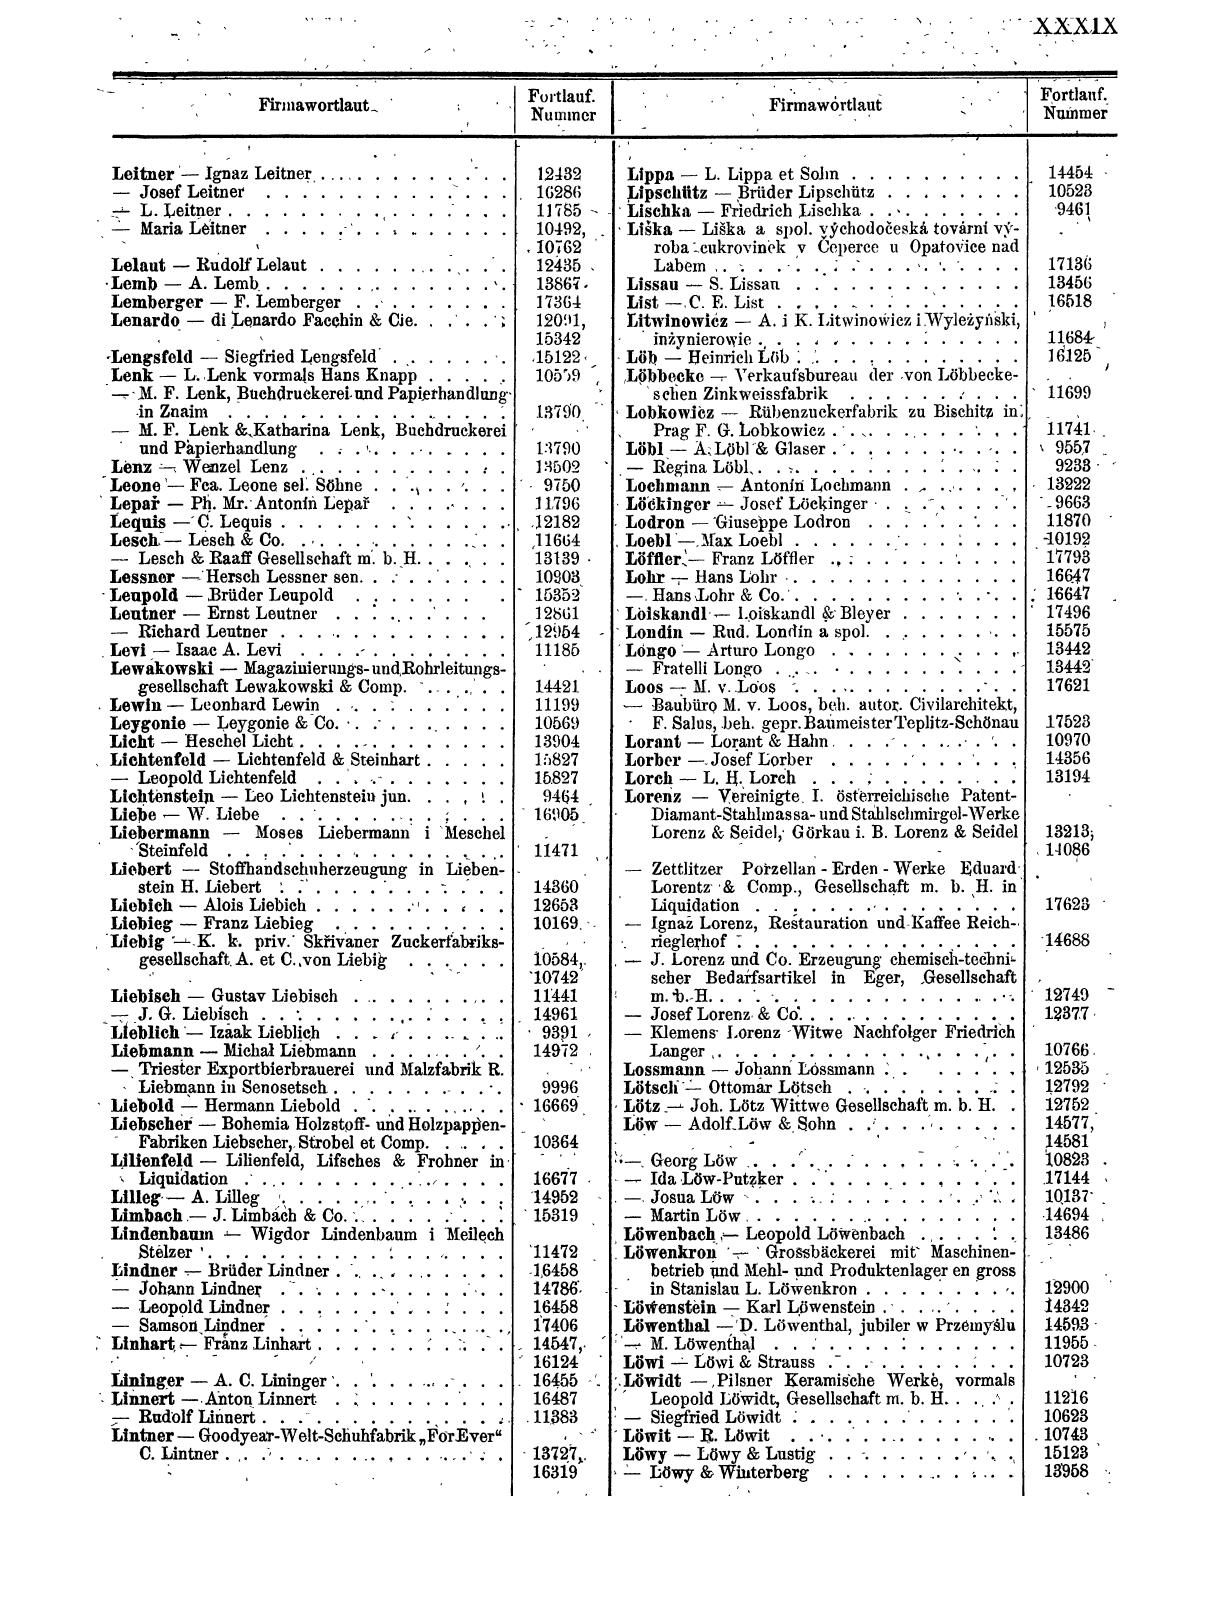 Zentralblatt für die Eintragungen in das Handelsregister 1913, Teil 2 - Seite 43